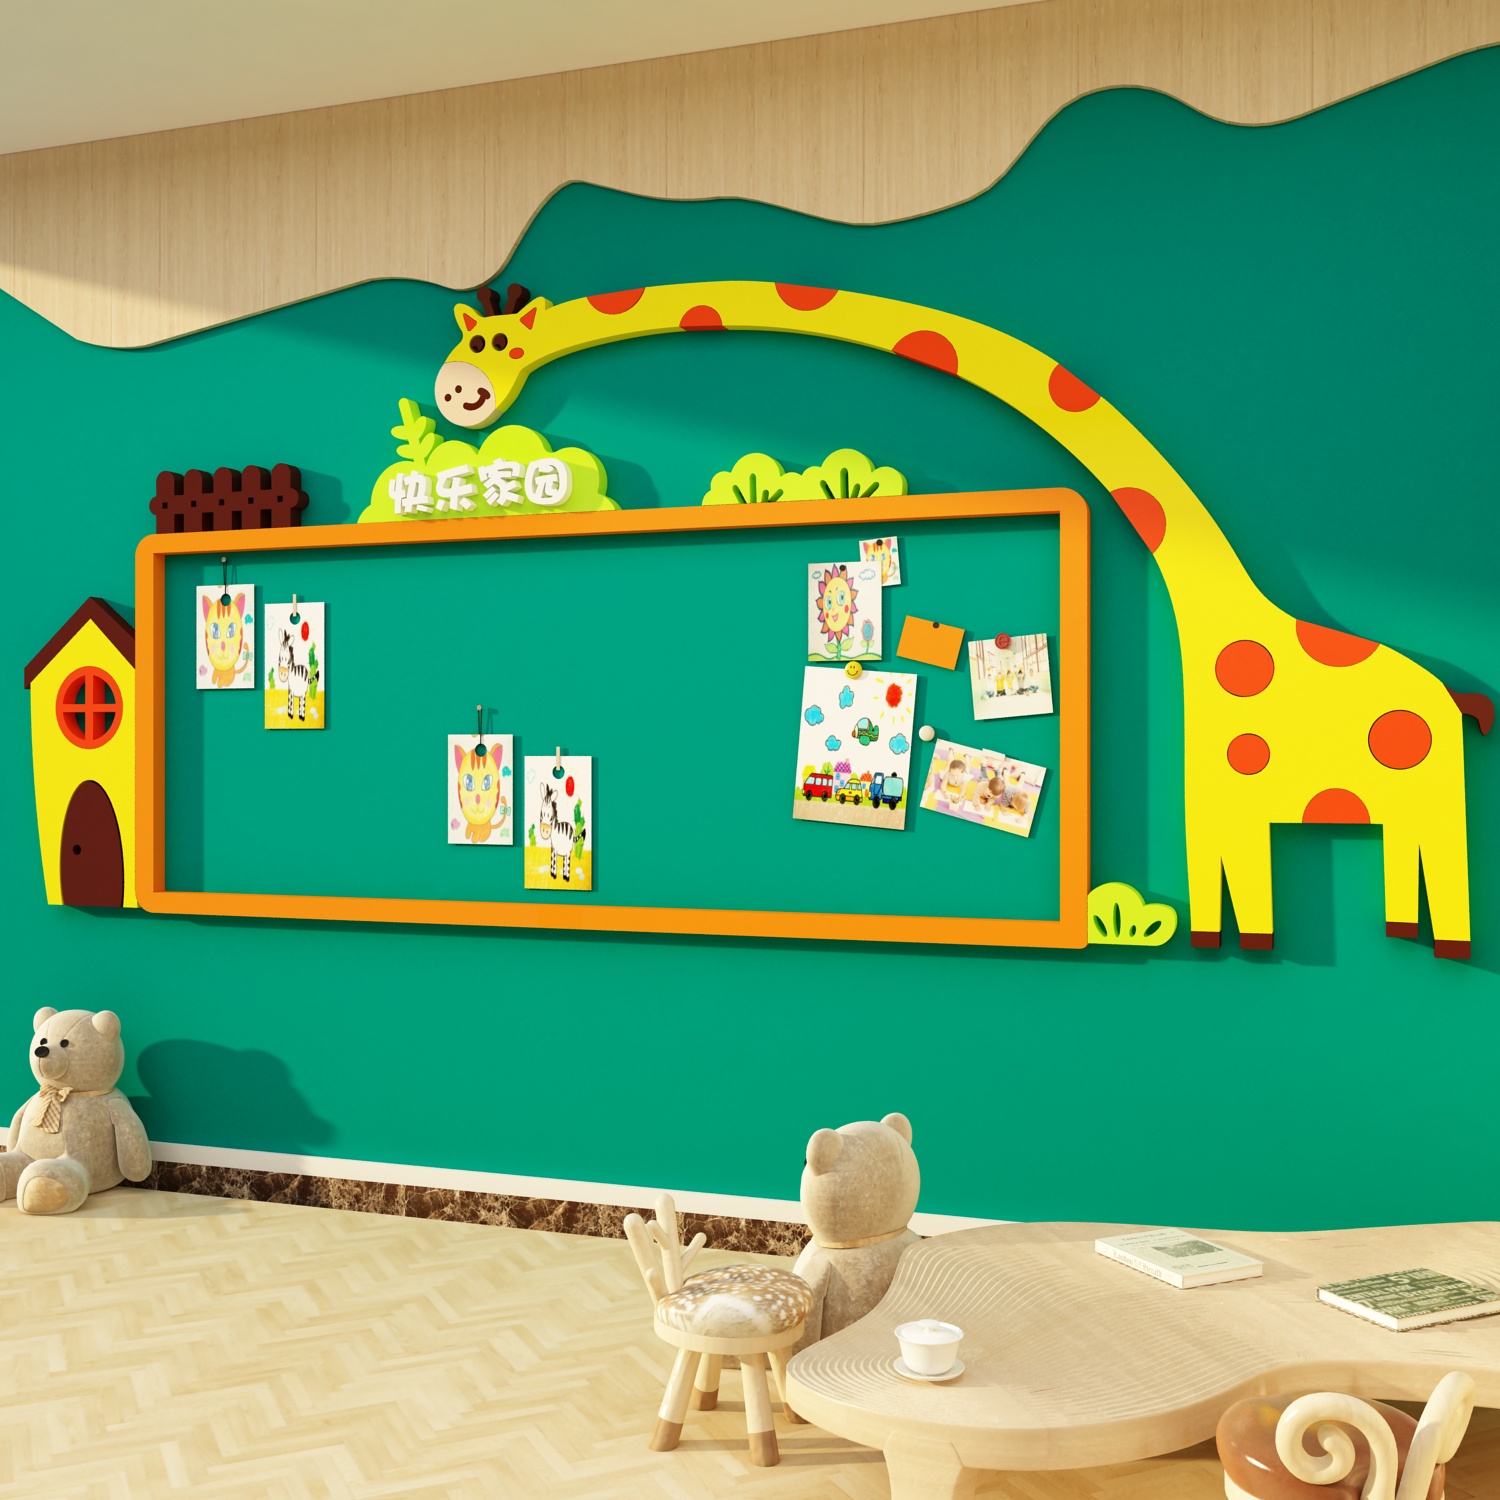 幼儿园环创主题成品托管班照片展示墙面春天装饰互动走廊文化设计